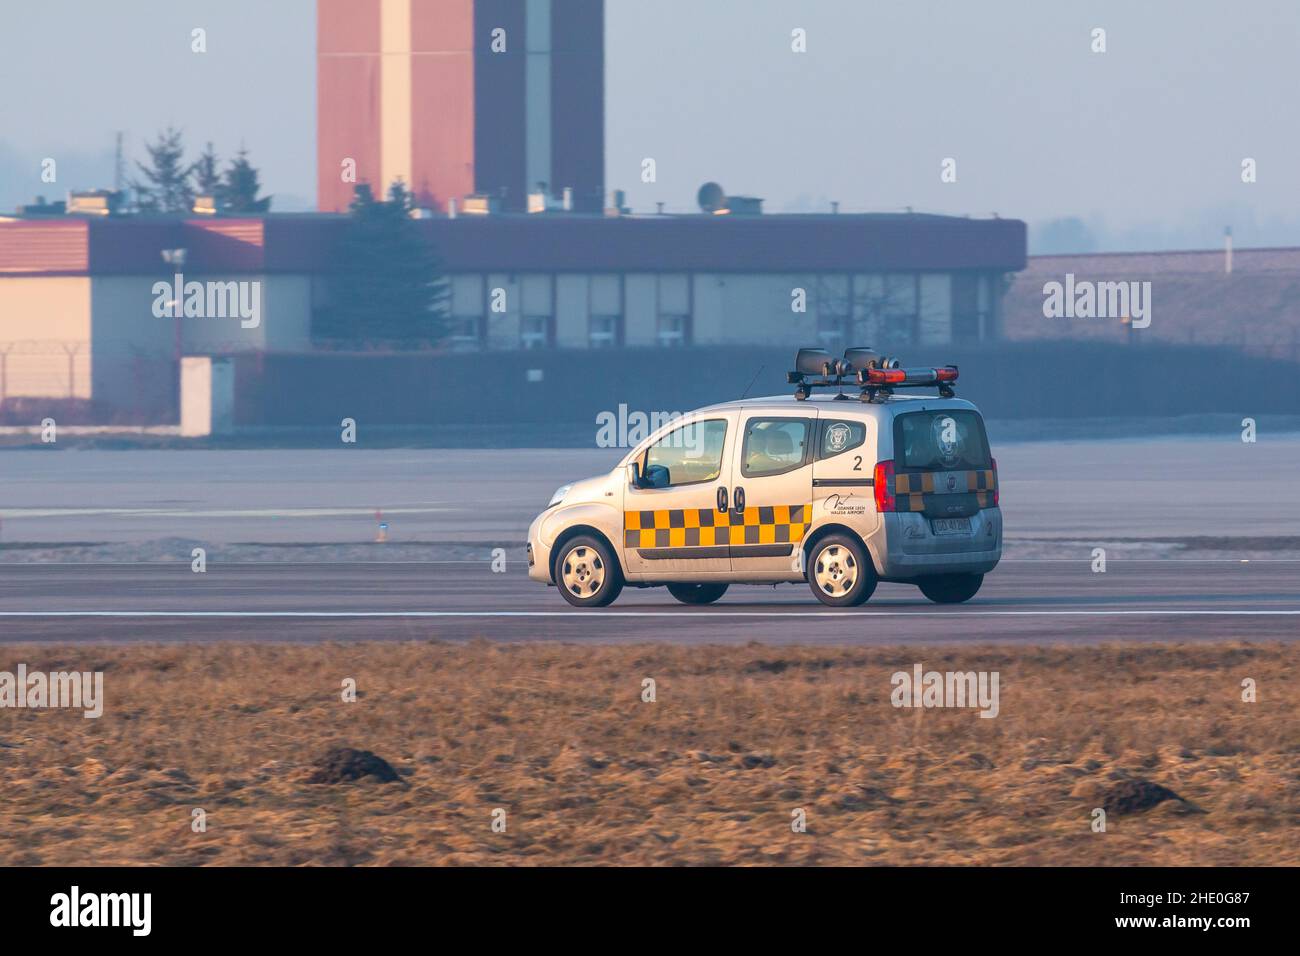 Gdansk, Pologne - 11 mars 2018 : voiture de sécurité de l'aéroport, Fiat Qubo, à l'aéroport Lech Walesa de Gdansk. Banque D'Images